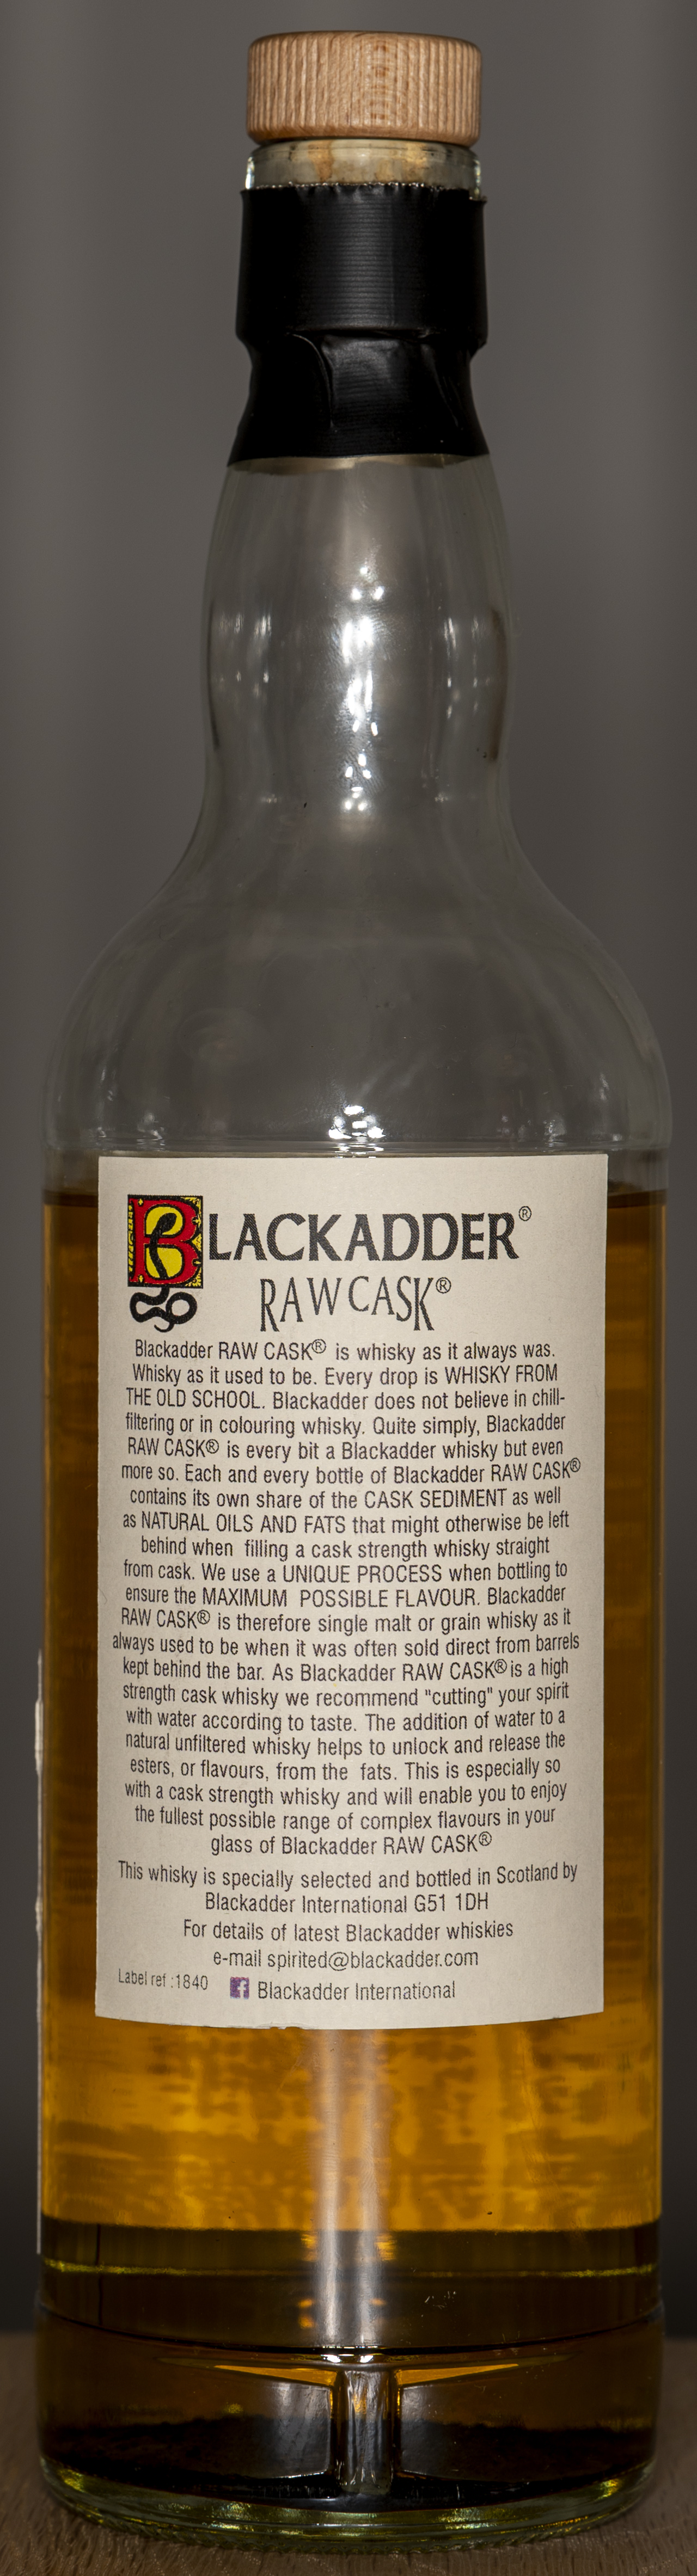 Billede: DSC_4765 - Blackadder Raw Cask 2001 16 years Ben Nevis - bottle back.jpg